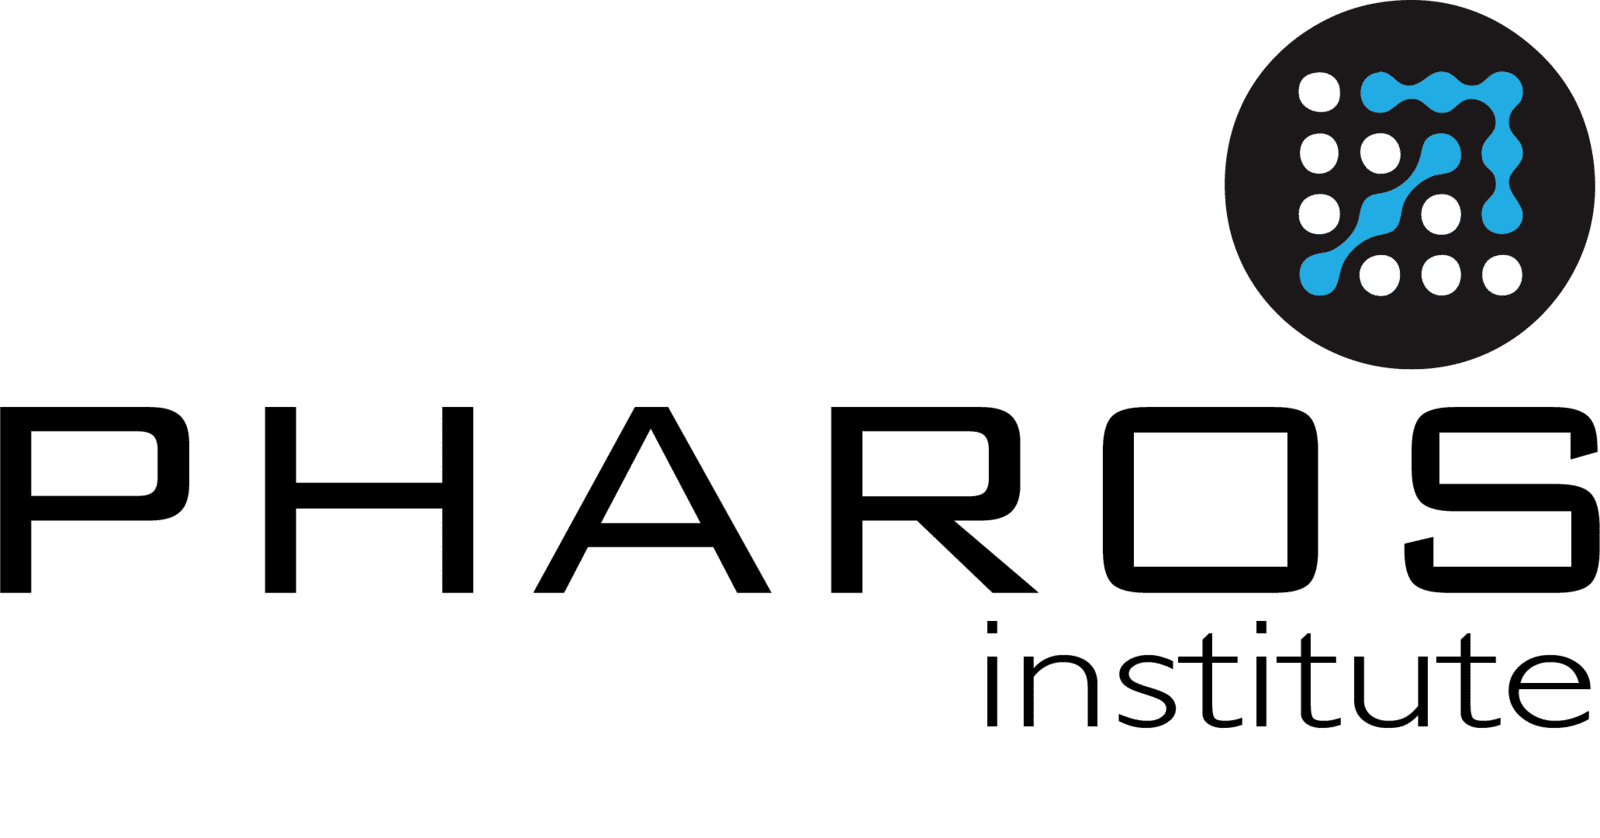 Pharos Institute